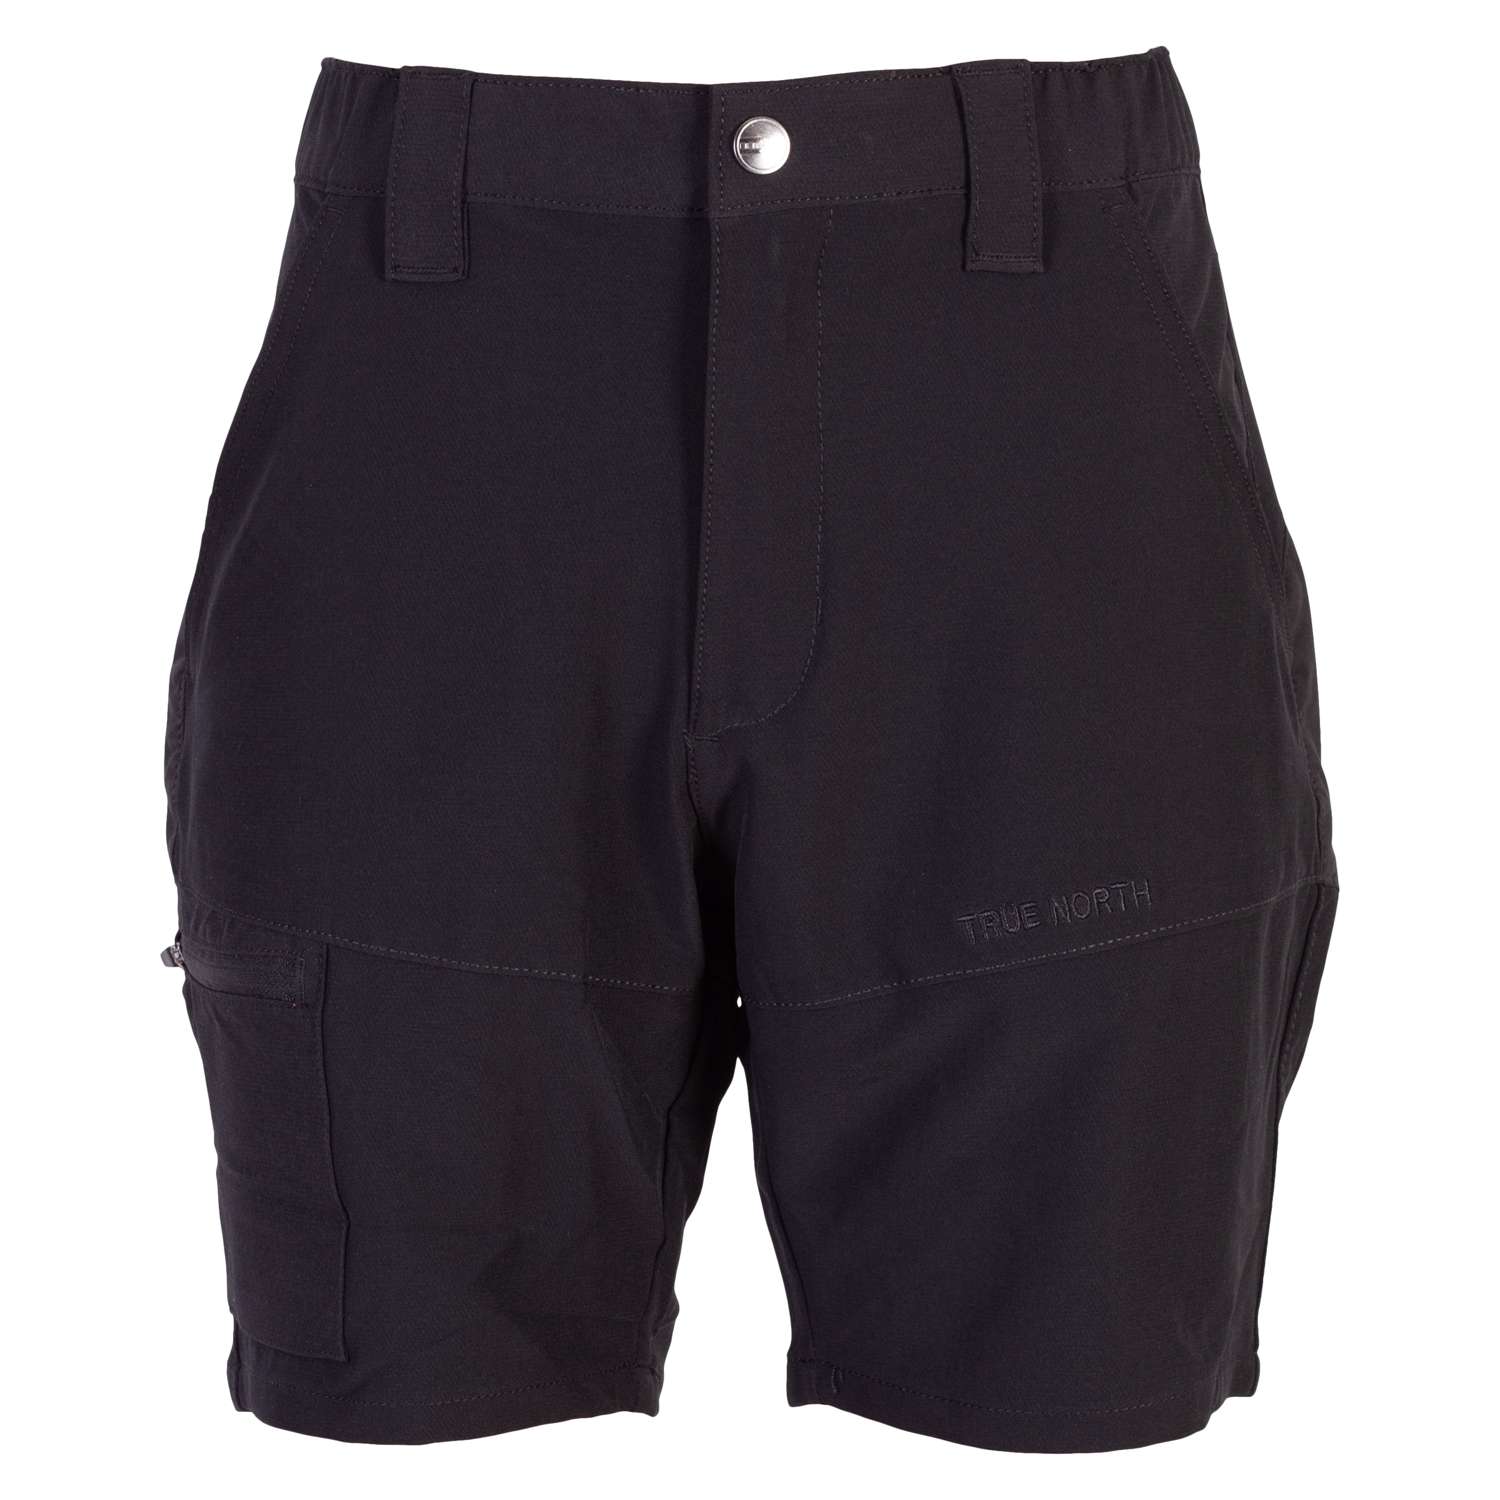 True North - Dame outdoor shorts - Sort - L